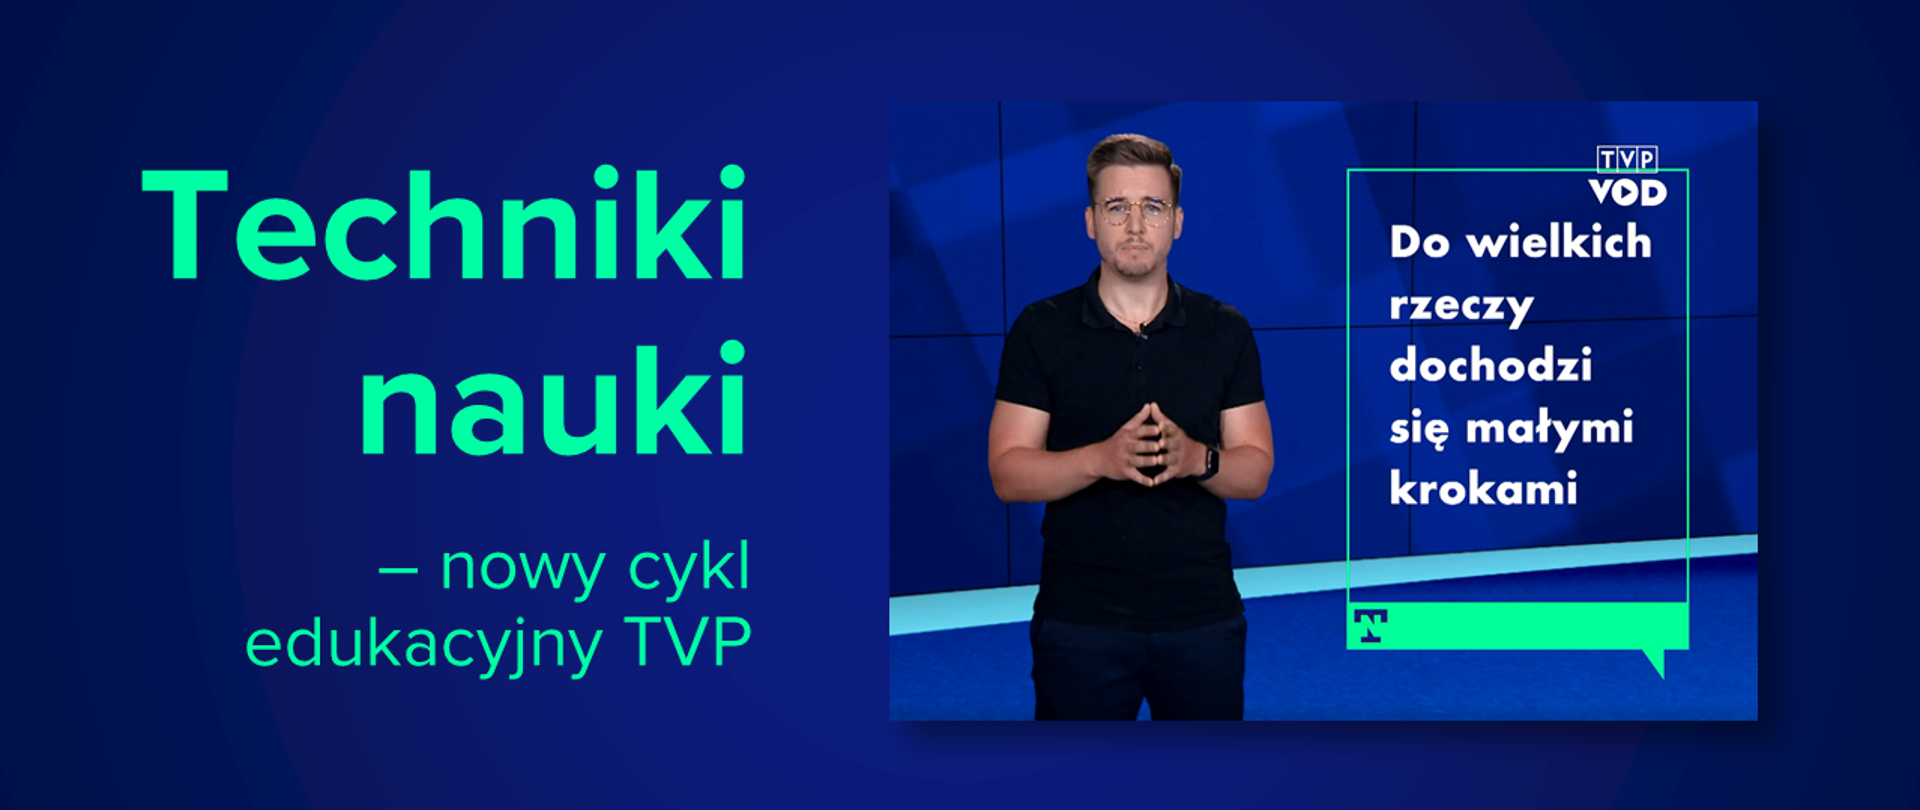 Ciemnoniebieska grafika z tekstem "Techniki nauki – nowy cykl edukacyjny TVP" i kadrem z programu edukacyjnego.